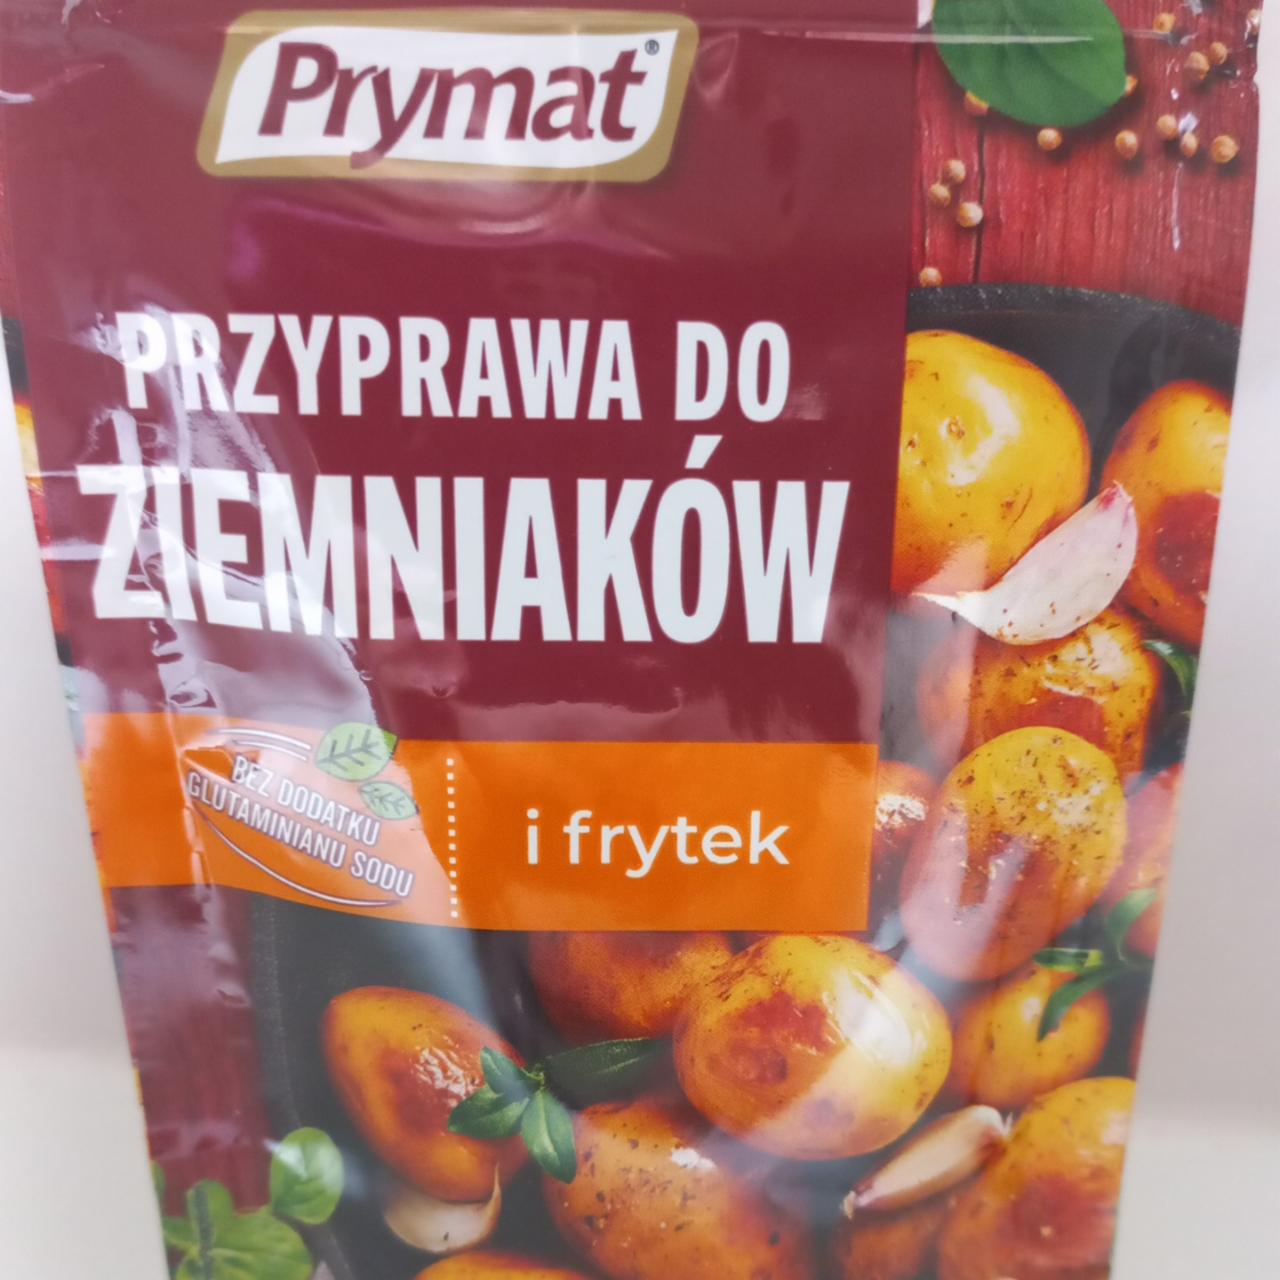 Фото - Приправа к картофелю и фри Prymat